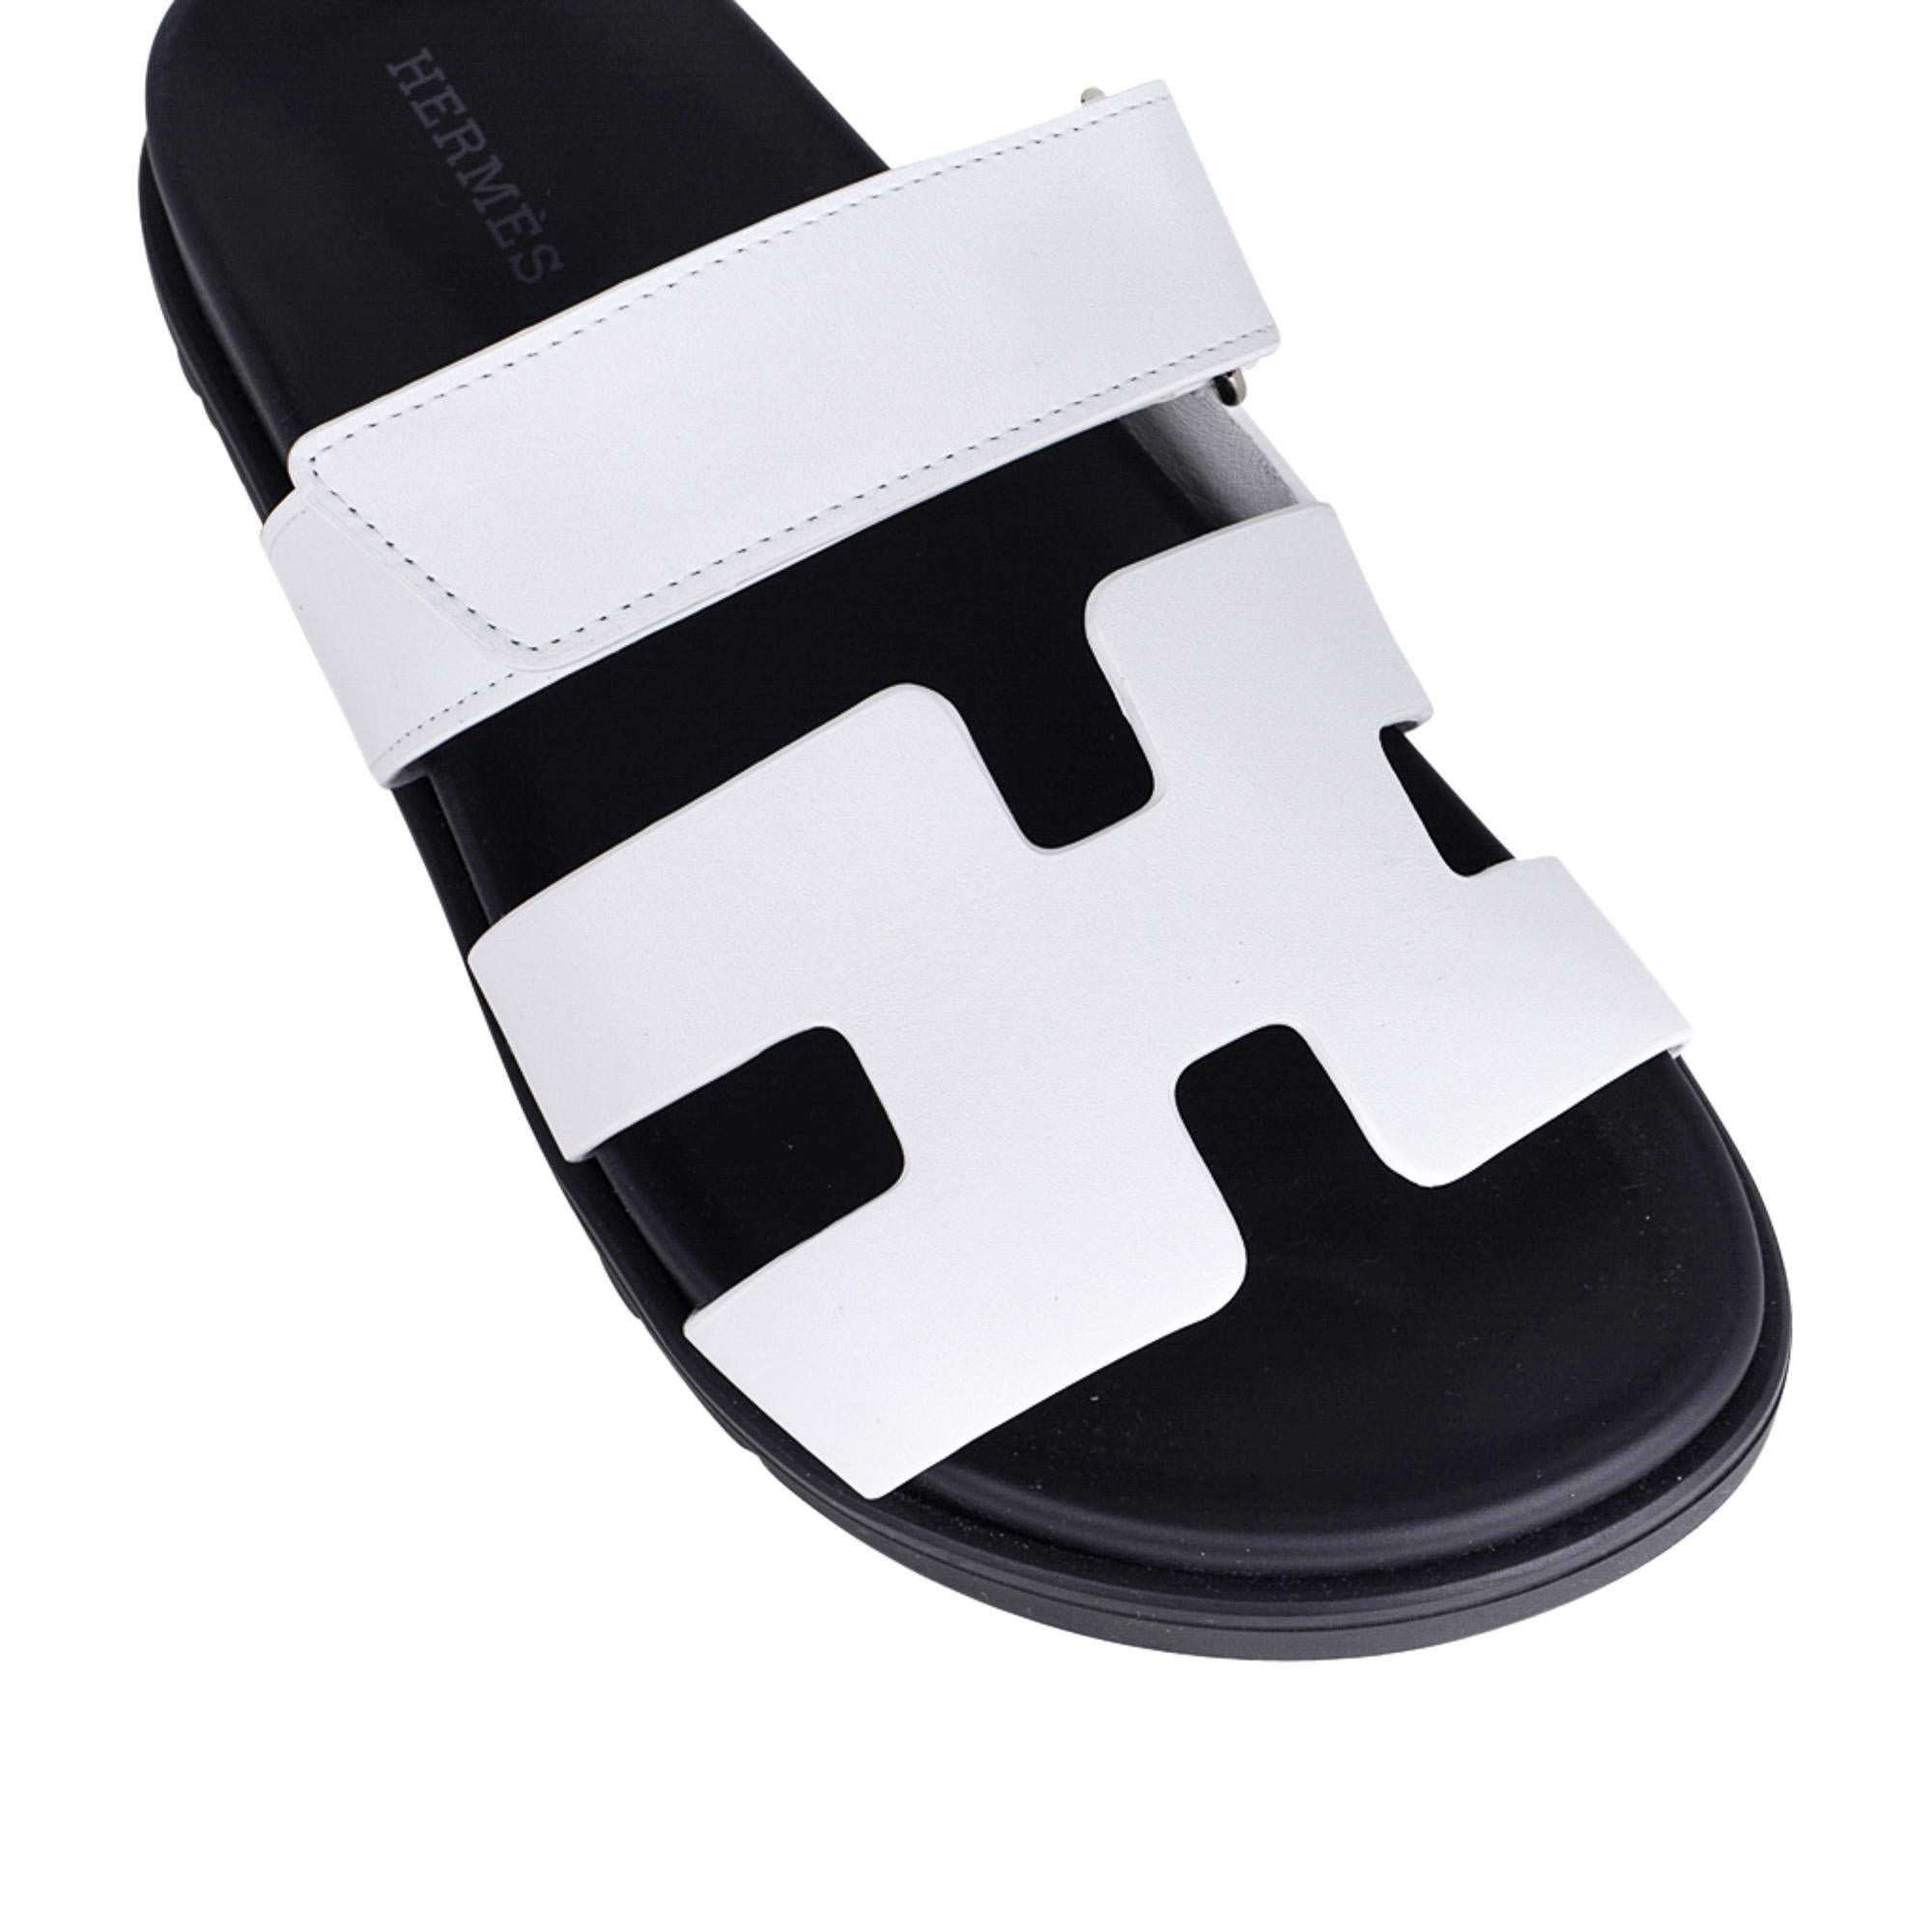 Mightychic propose une édition limitée de la sandale Hermès Chypre en blanc.
Cuir de veau, semelle intérieure anatomique noire et semelle en caoutchouc noir embossé.
La sangle sur le pied est réglable grâce à une fermeture velcro.
Livré avec les